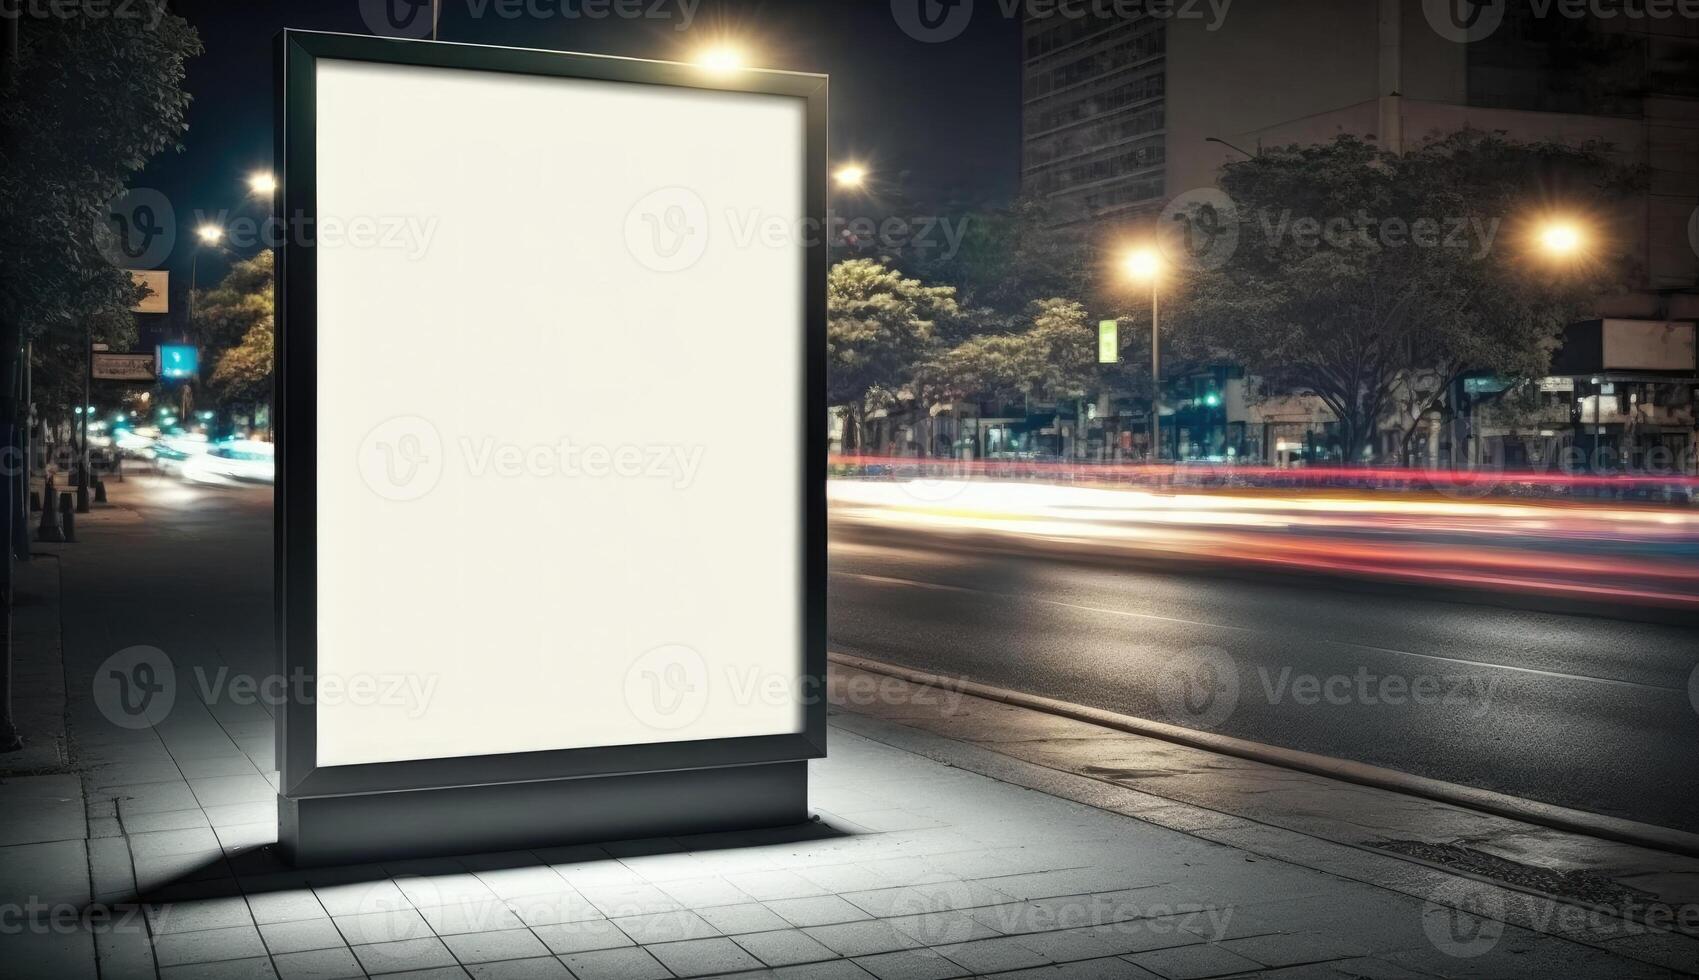 Vide panneau d'affichage maquette pour La publicité dans le ville, nuit voir, bokeh effet photo